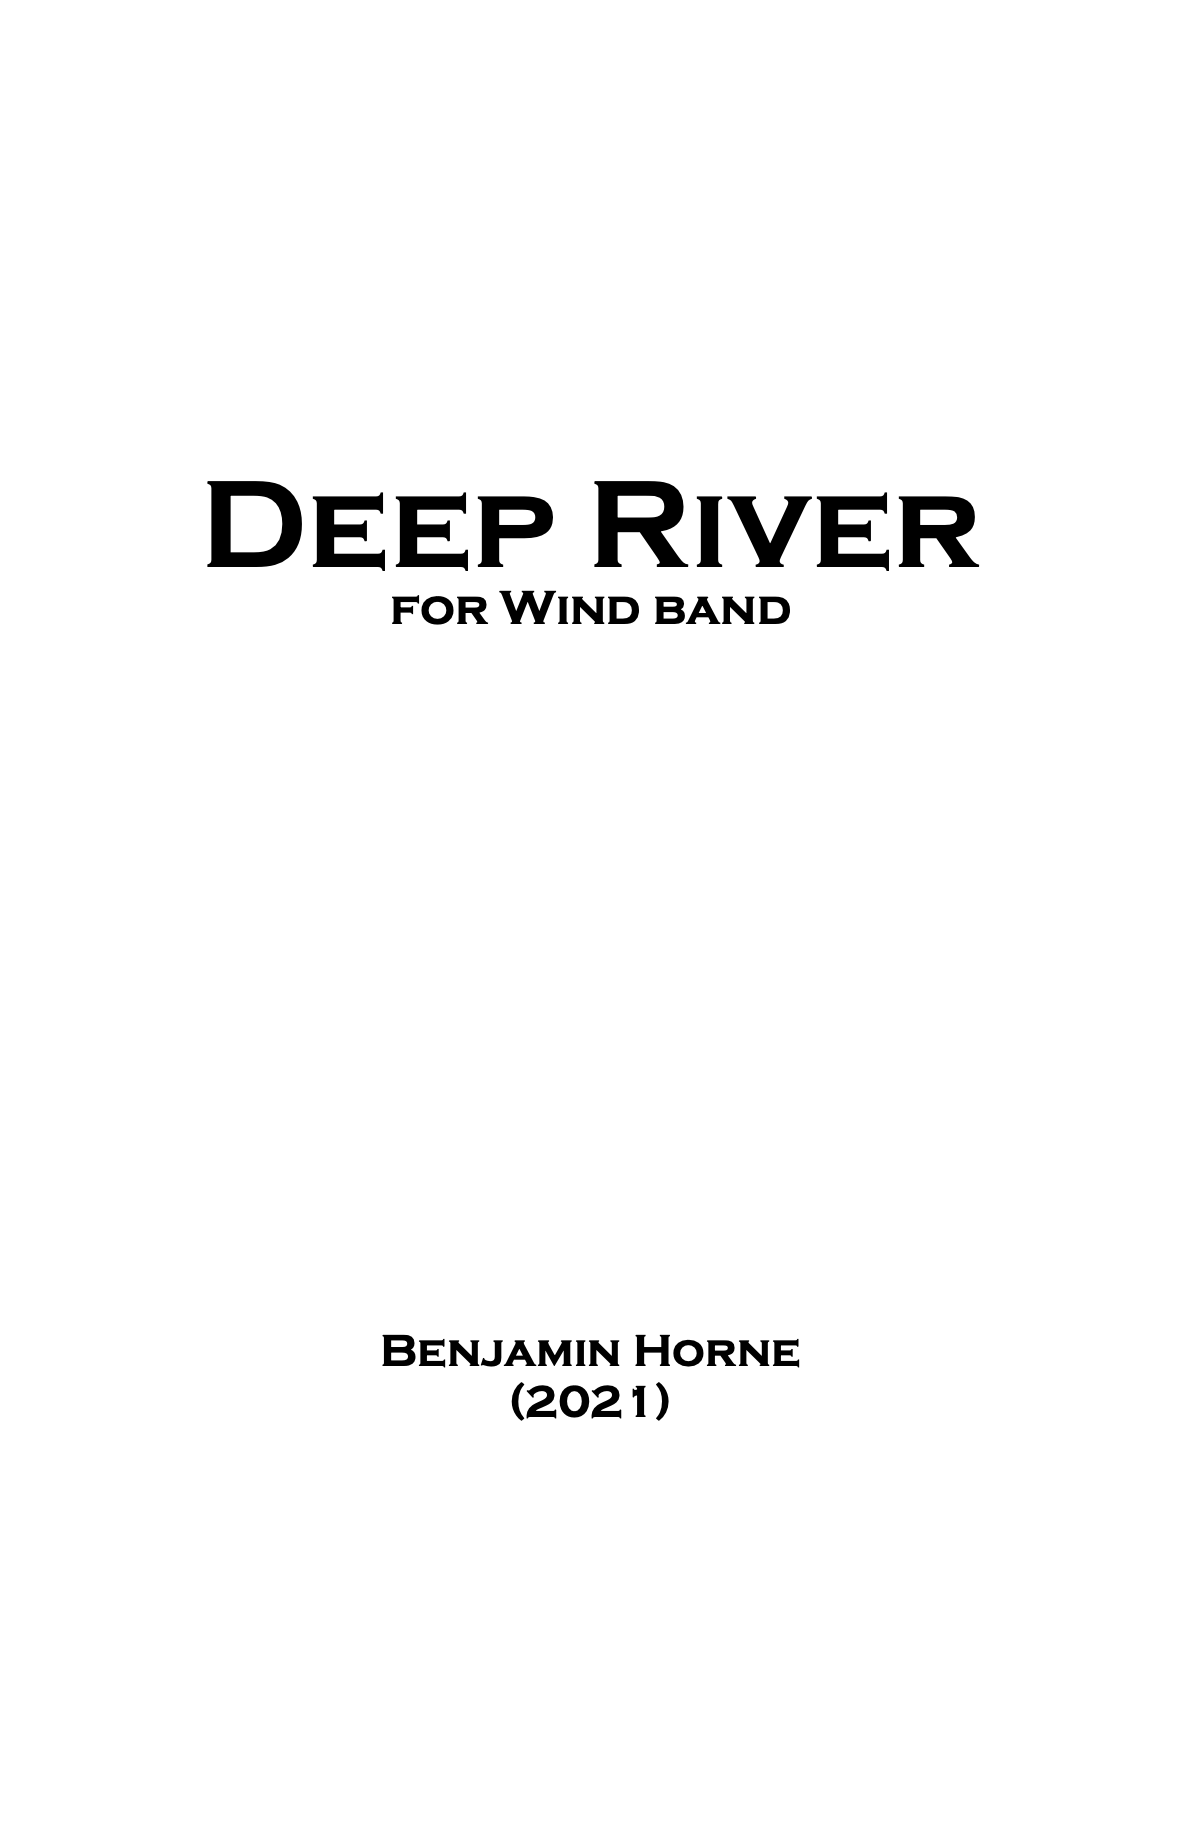 Deep River by Benjamin Horne